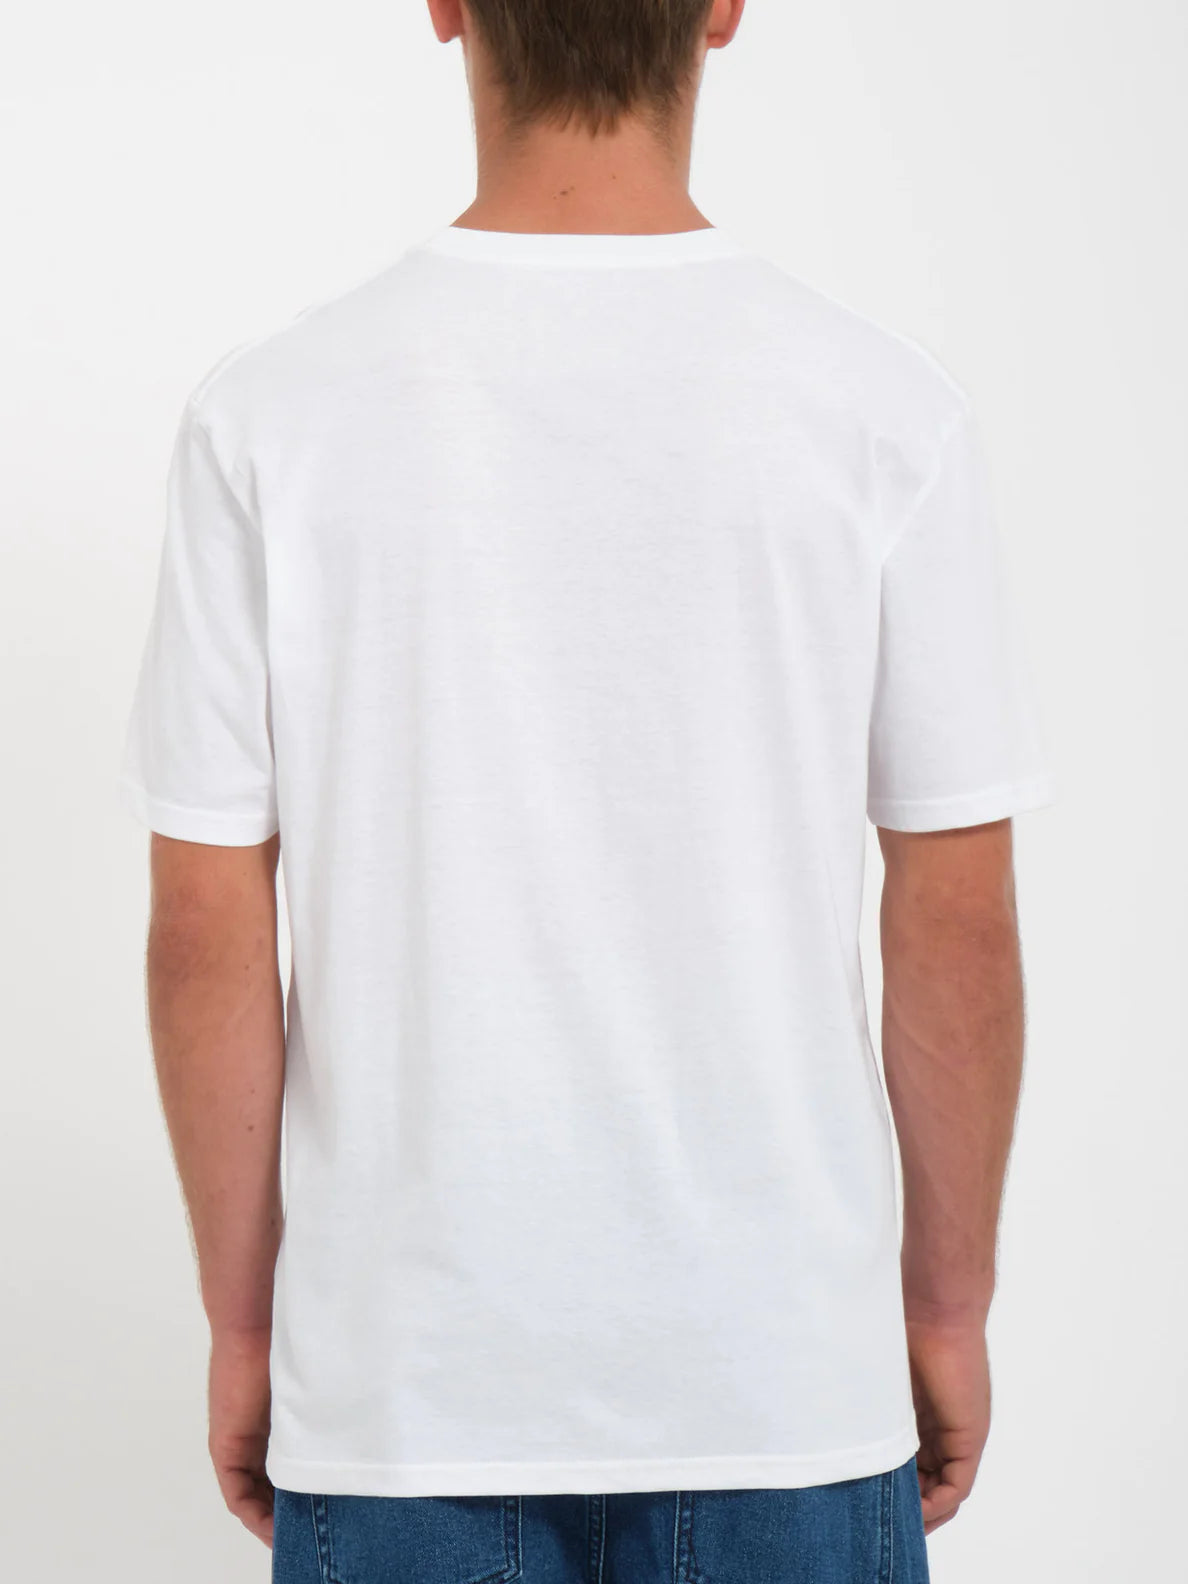 Volcom T-shirt Herbie - Blanc | Boutique Volcom | Collection_Zalando | Nouveaux produits | Produits les plus récents | Produits les plus vendus | t-shirts pour hommes | T-shirts à manches courtes pour hommes | surfdevils.com